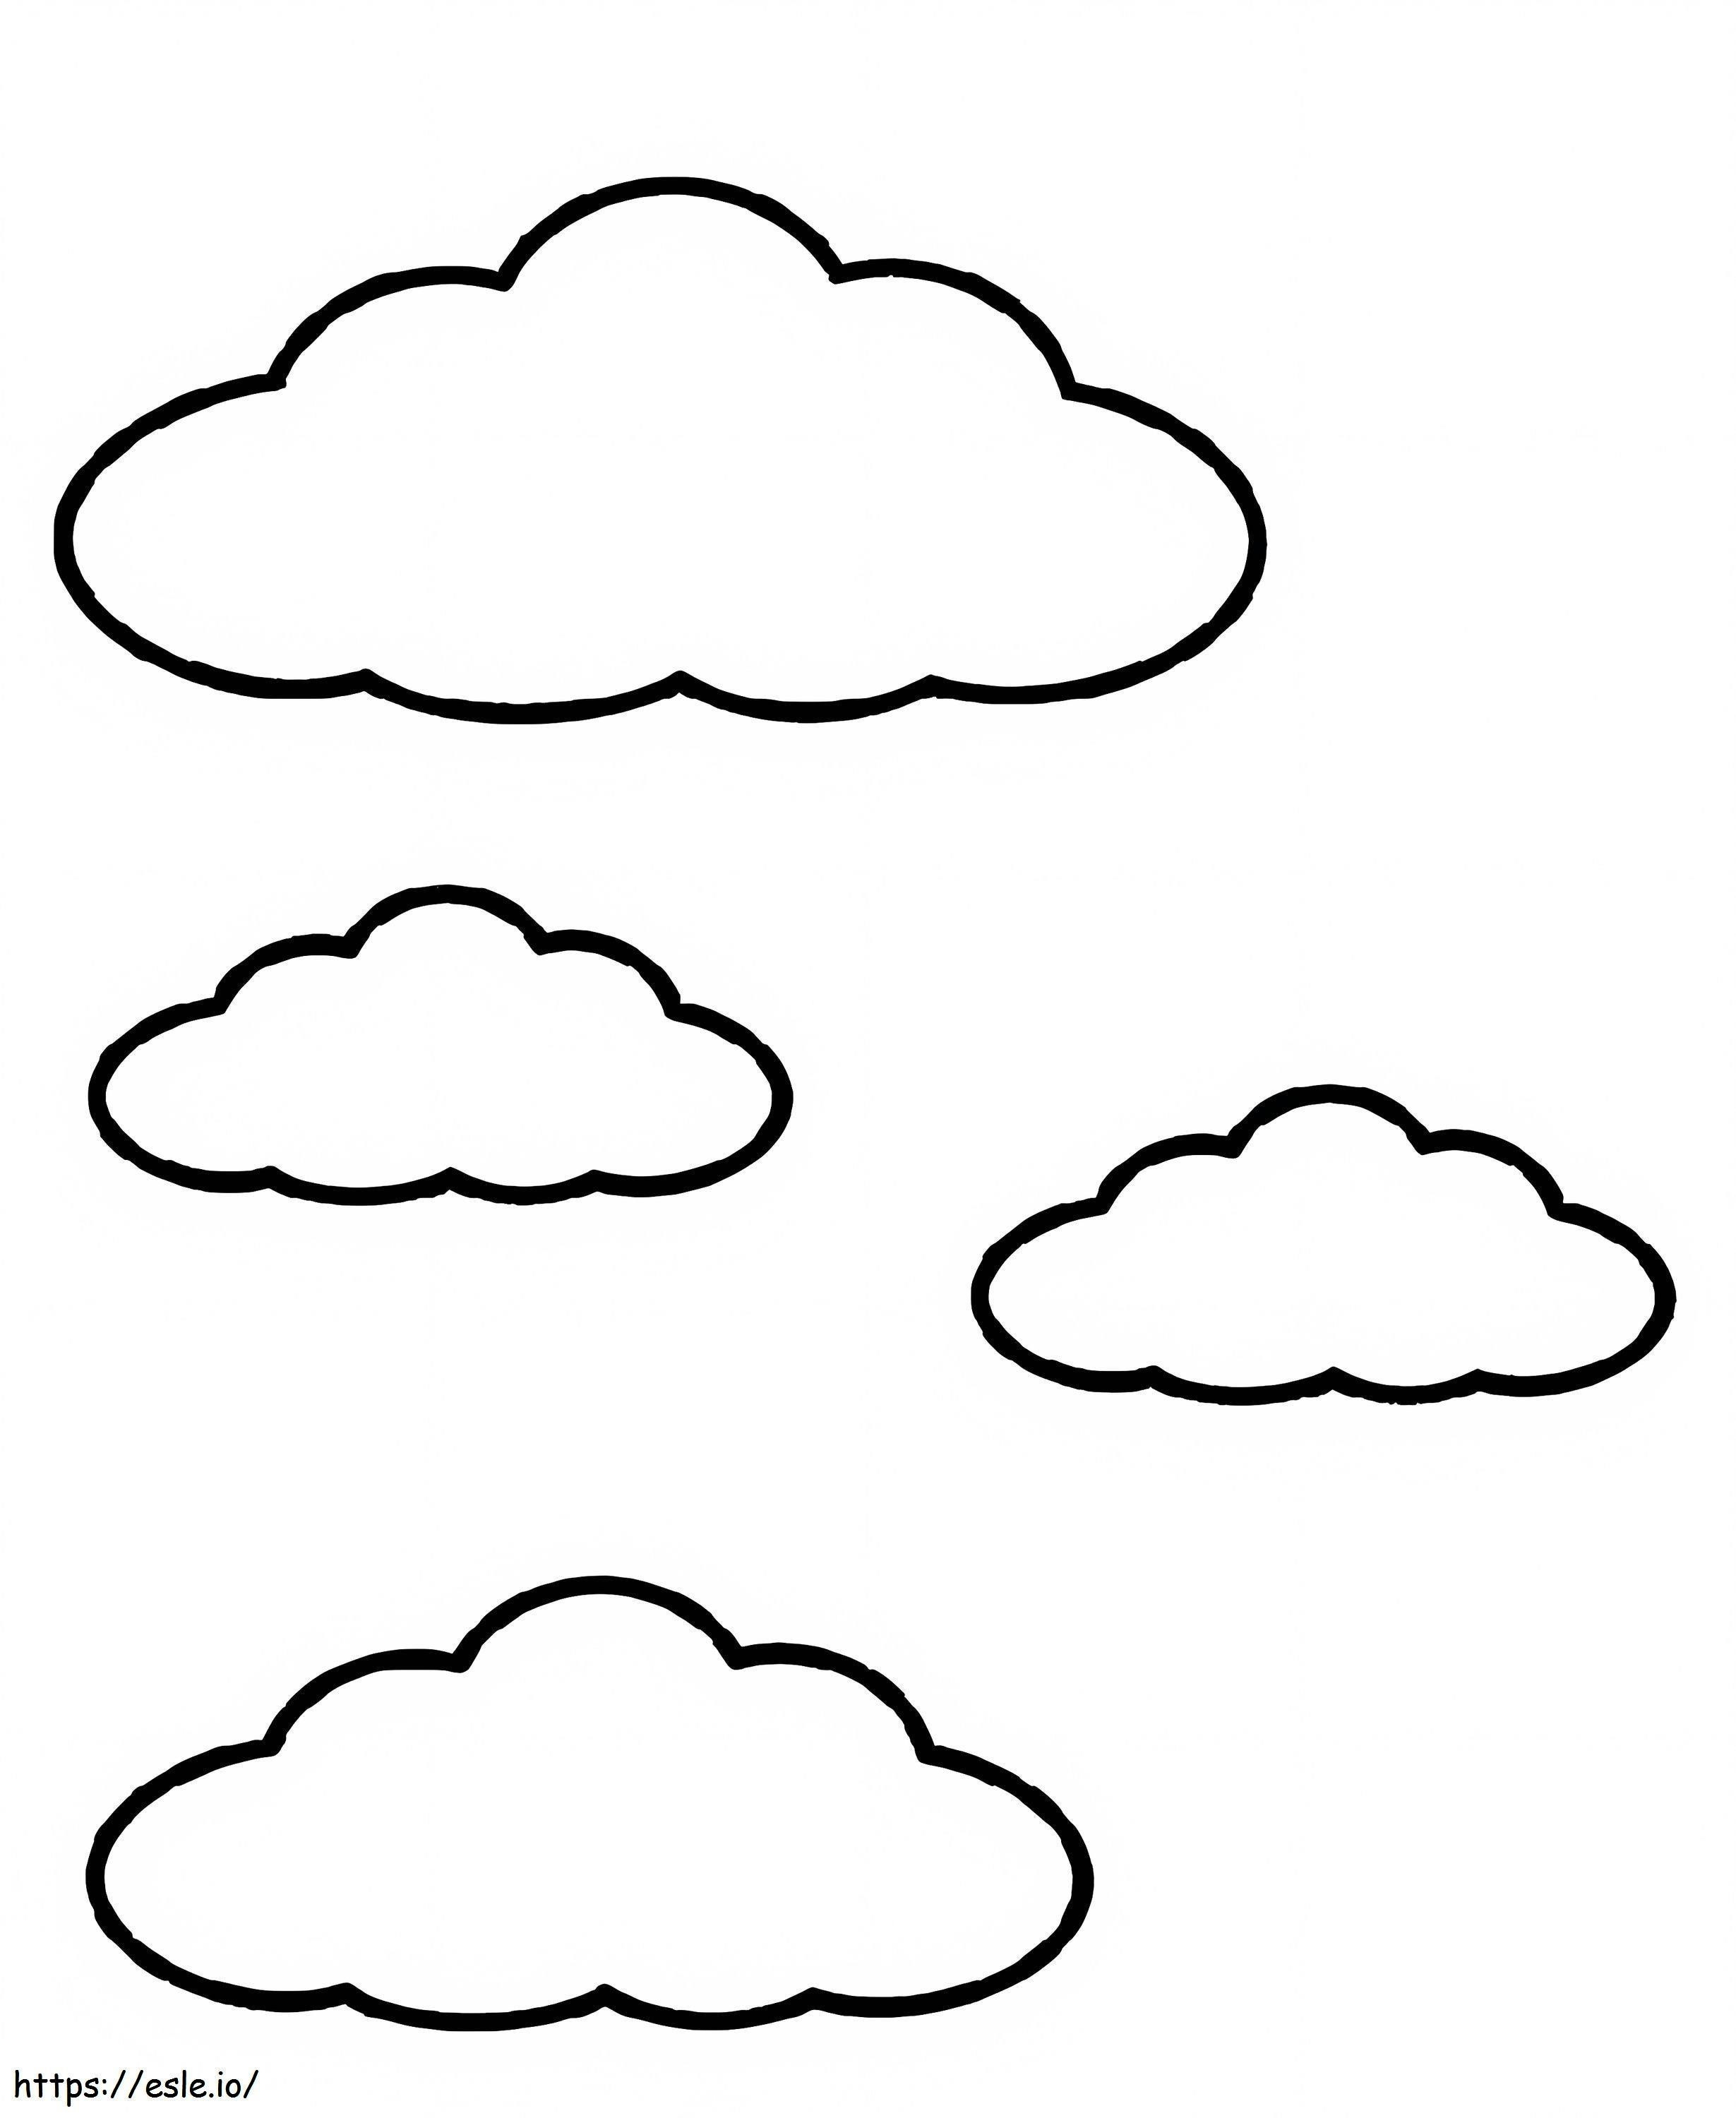 Einfache Wolken ausmalbilder